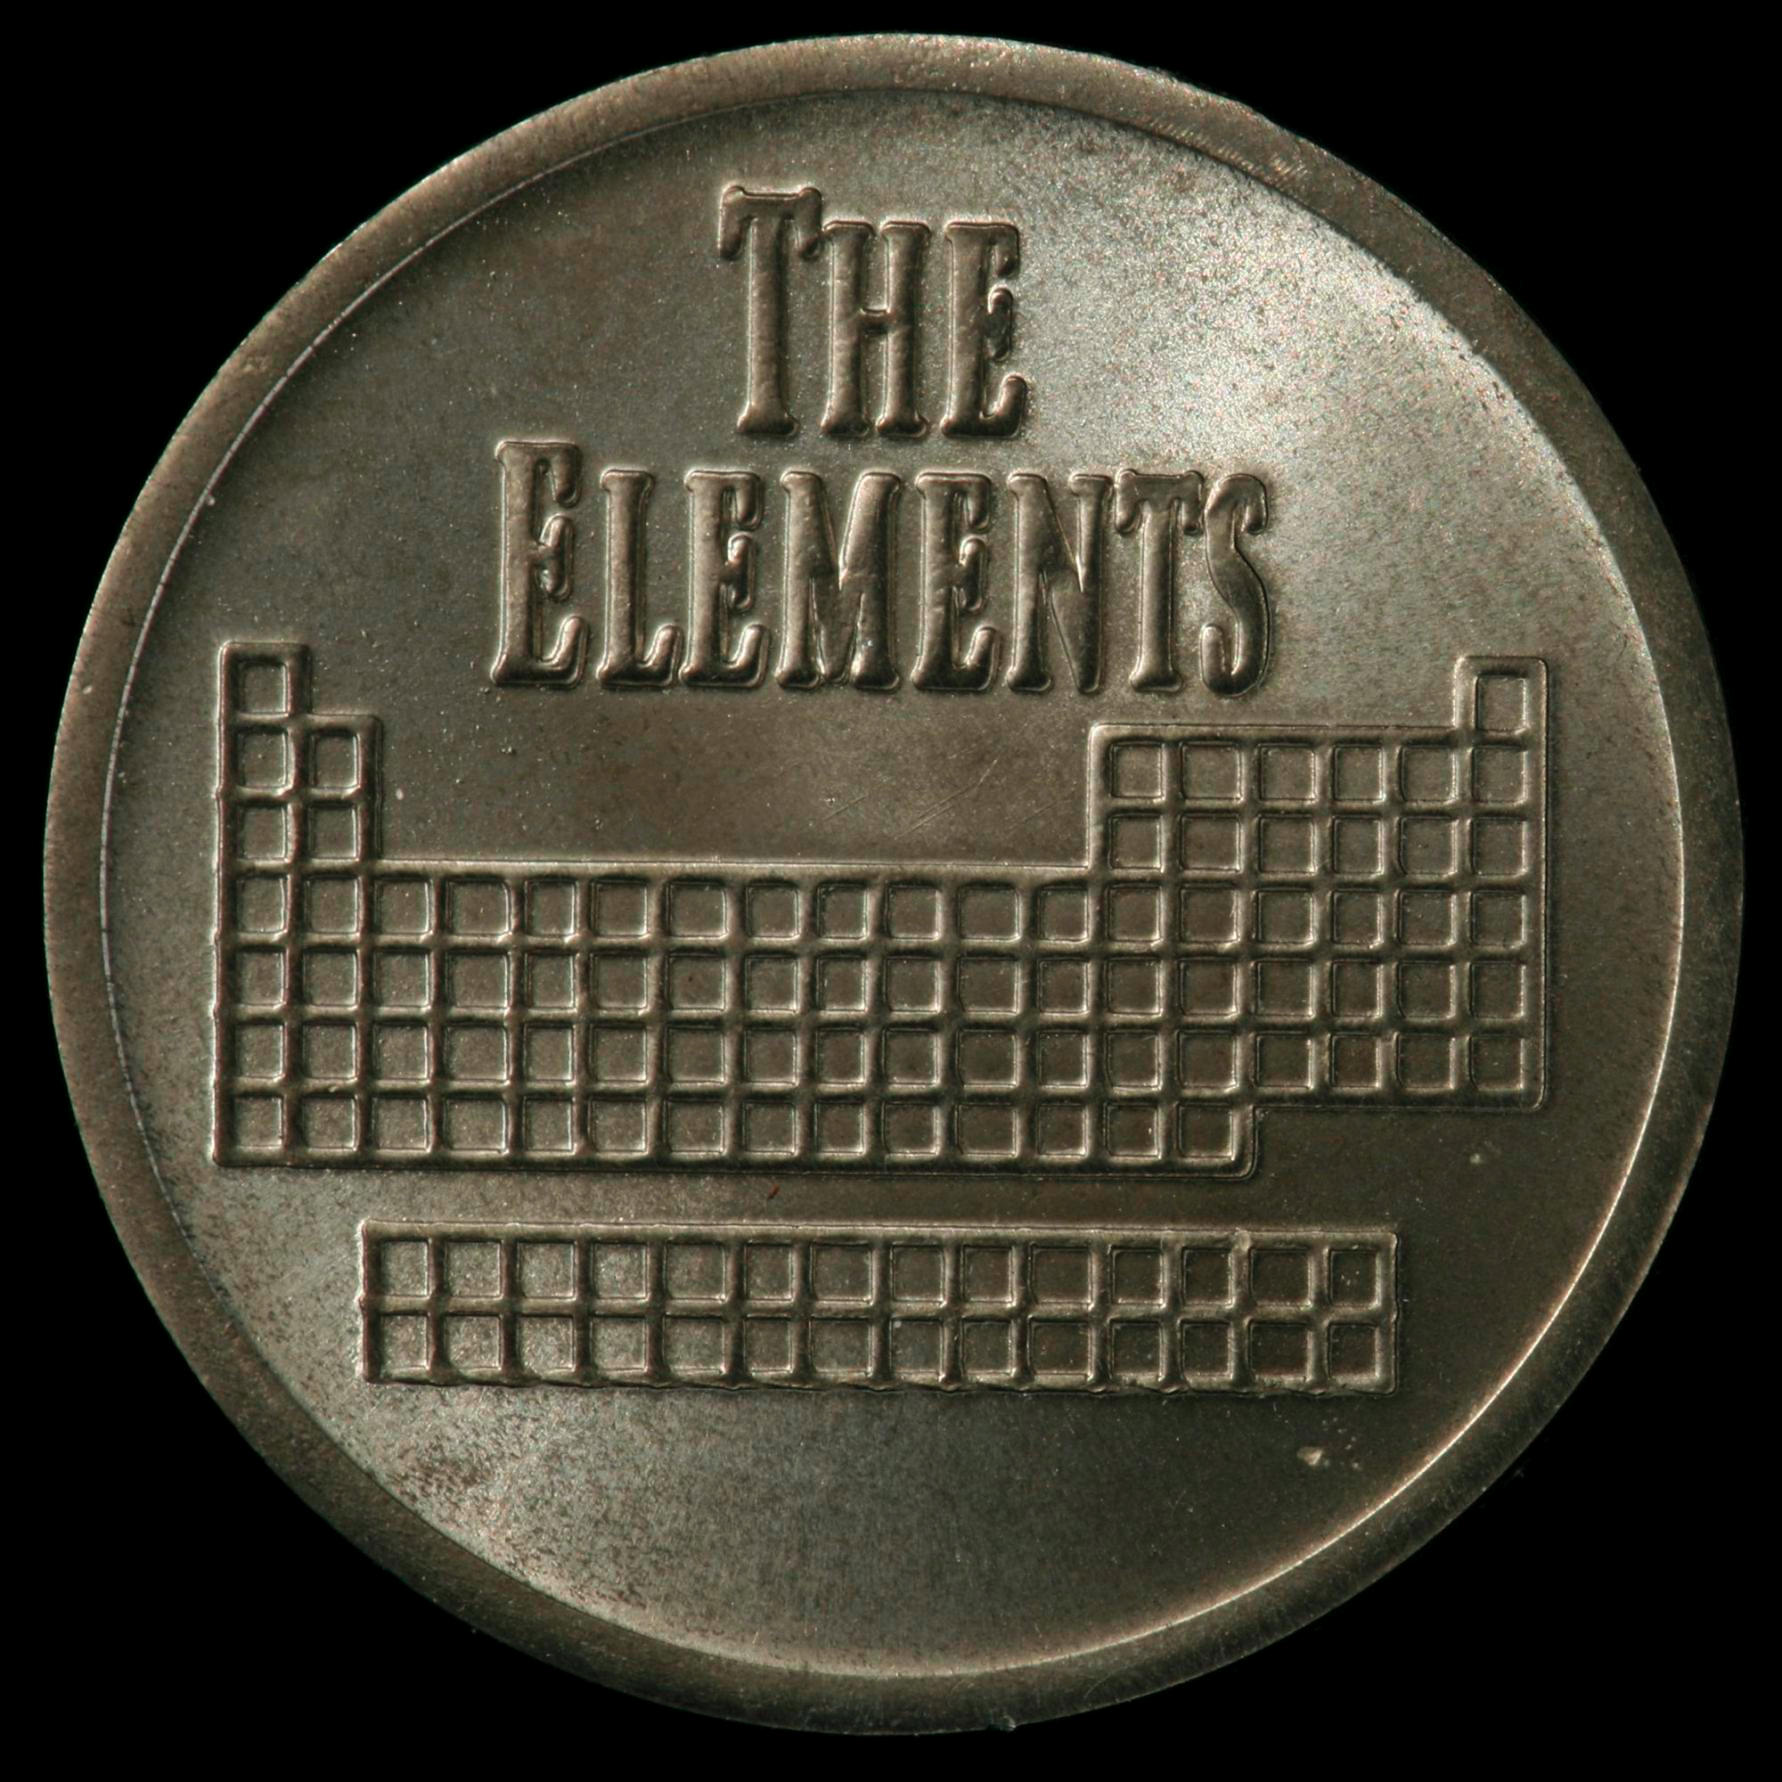 Zirconium Element coin